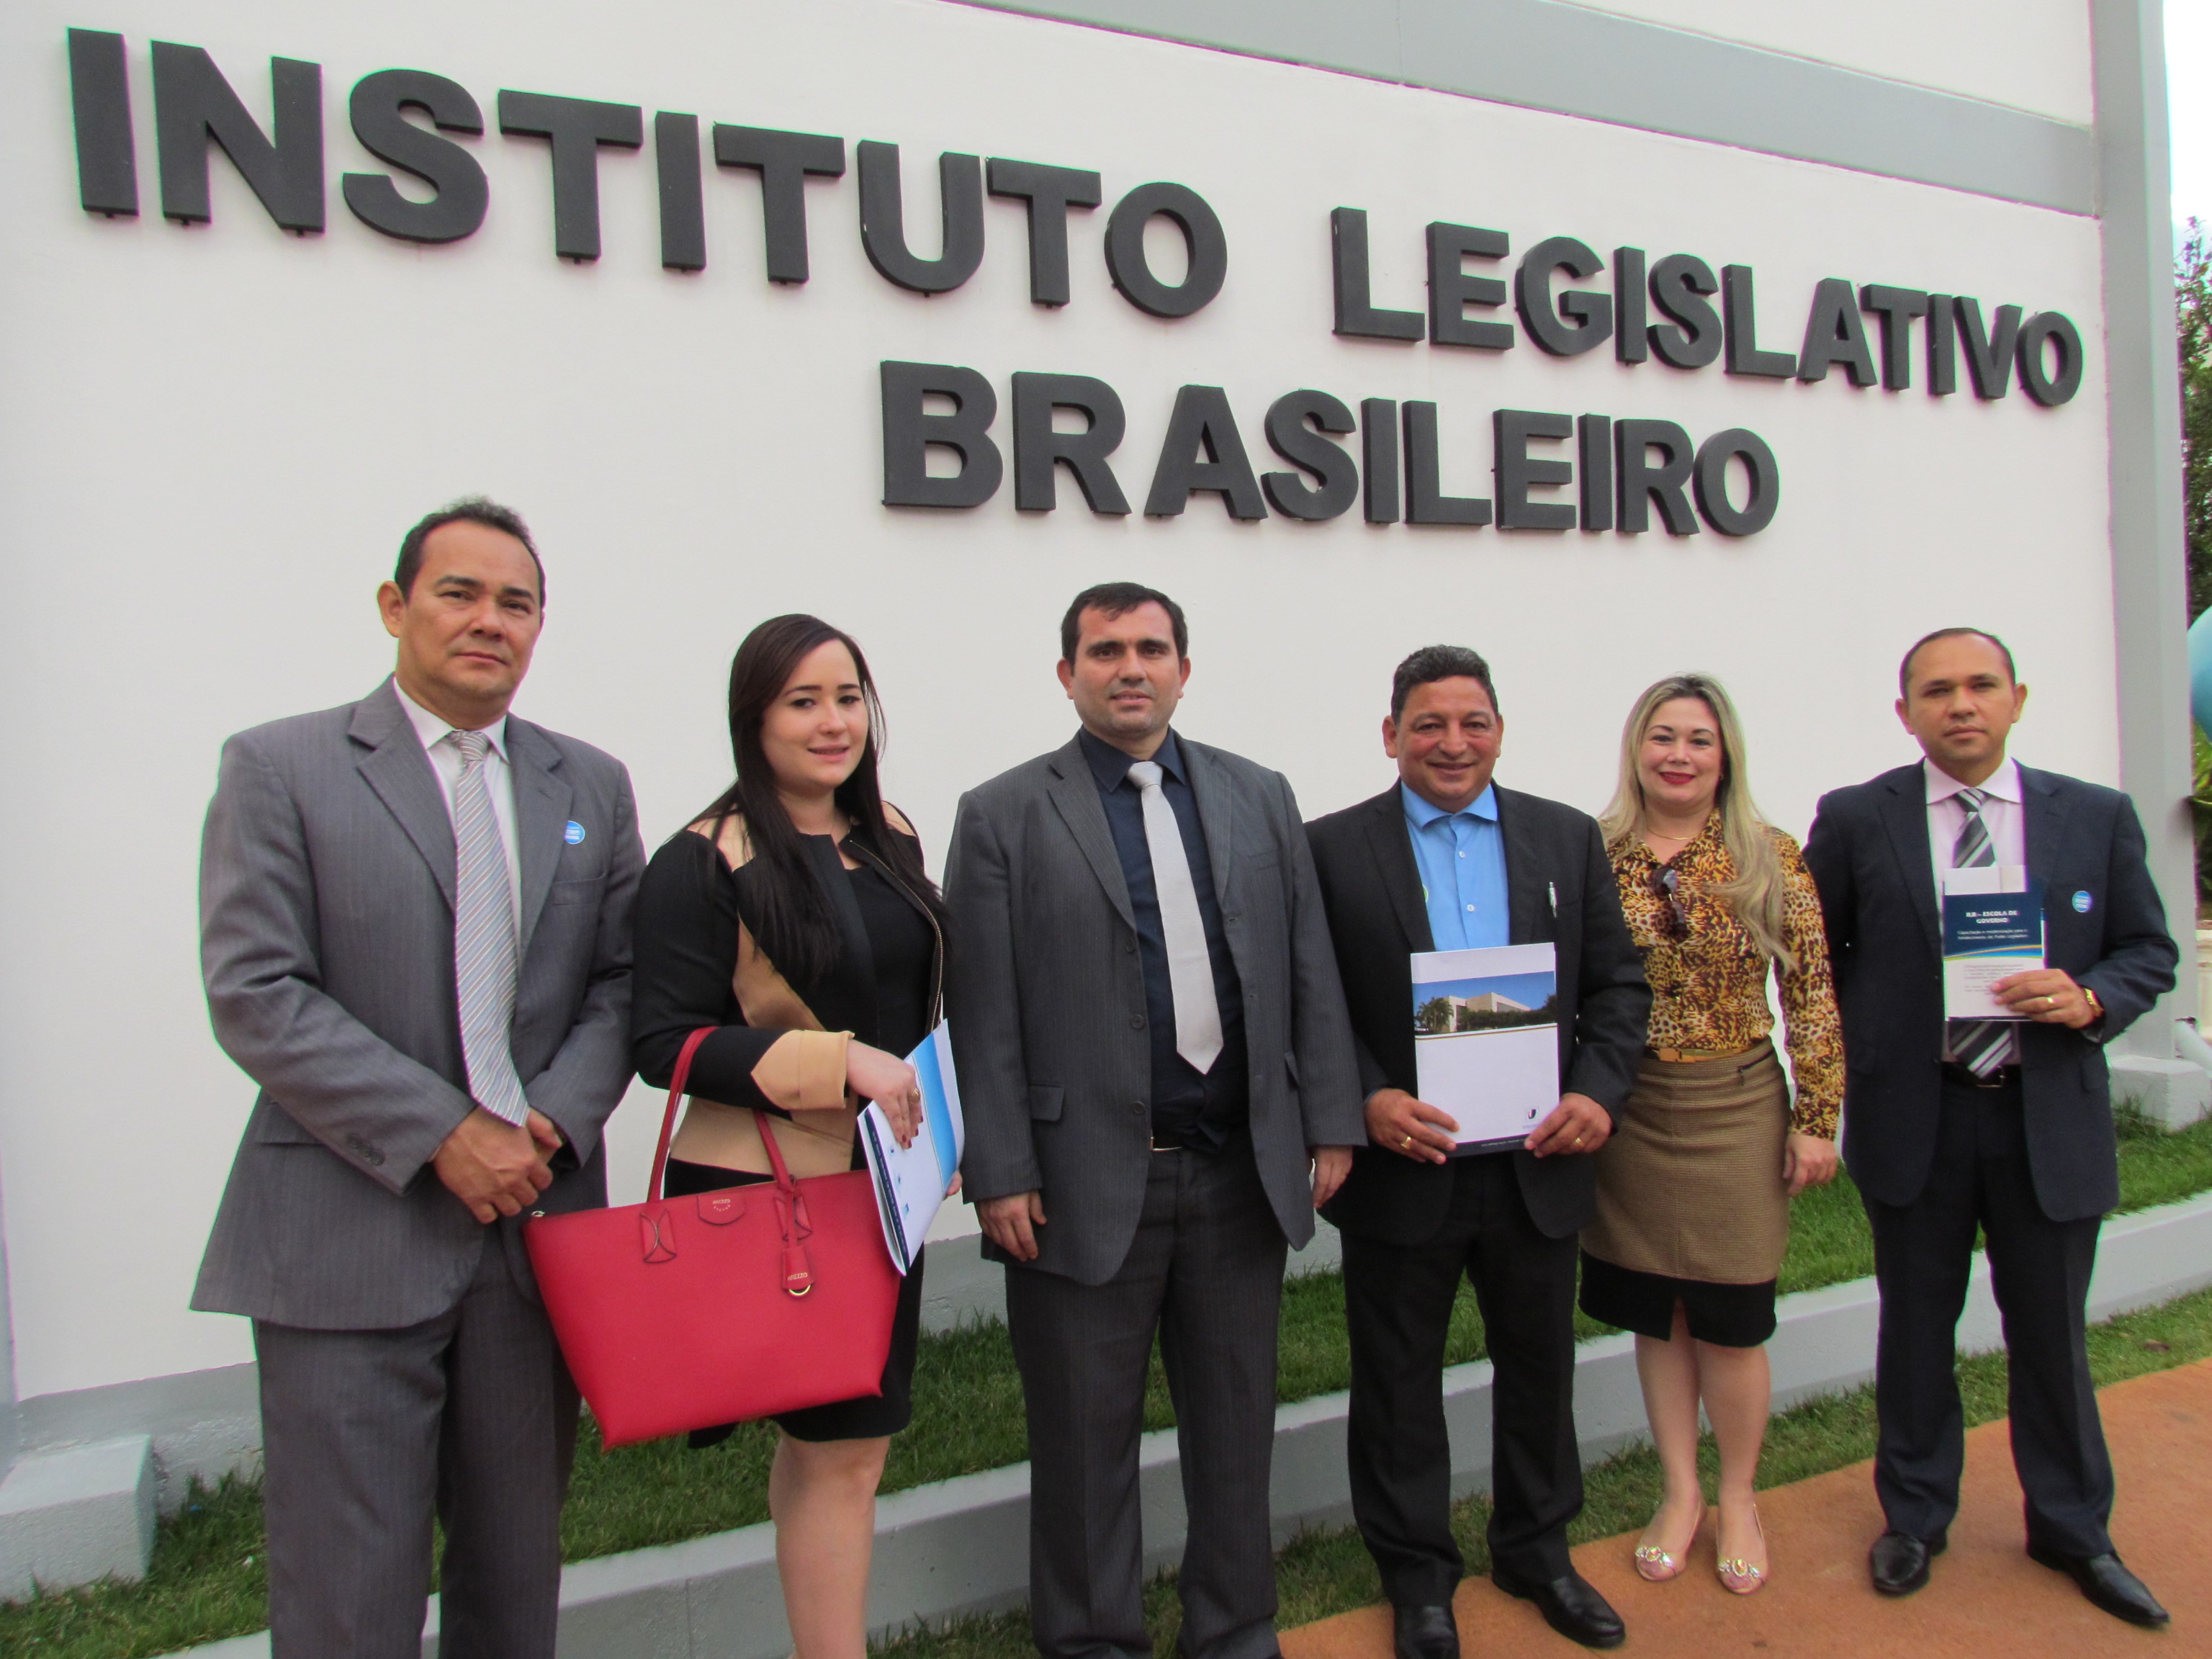 Vereadores visitam a estrutura do Instituto Legislativo Brasileiro – ILB, em Brasília e discutem parcerias.